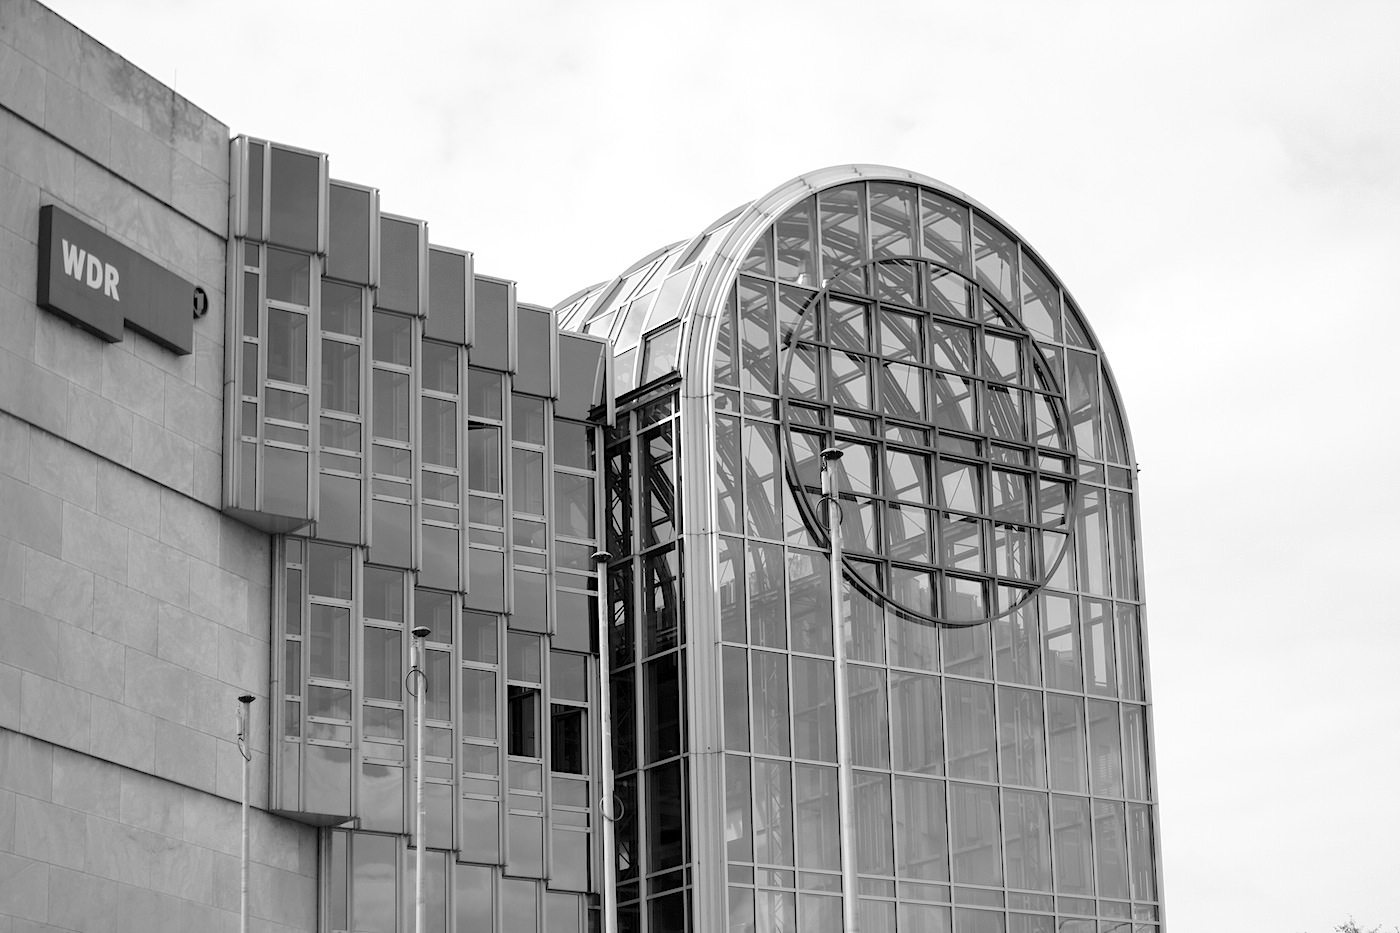 Westdeutscher Rundfunk, Funkhaus. Die 25 Meter hohe
verglaste Eingangshalle soll einem Volksempfänger ähneln.